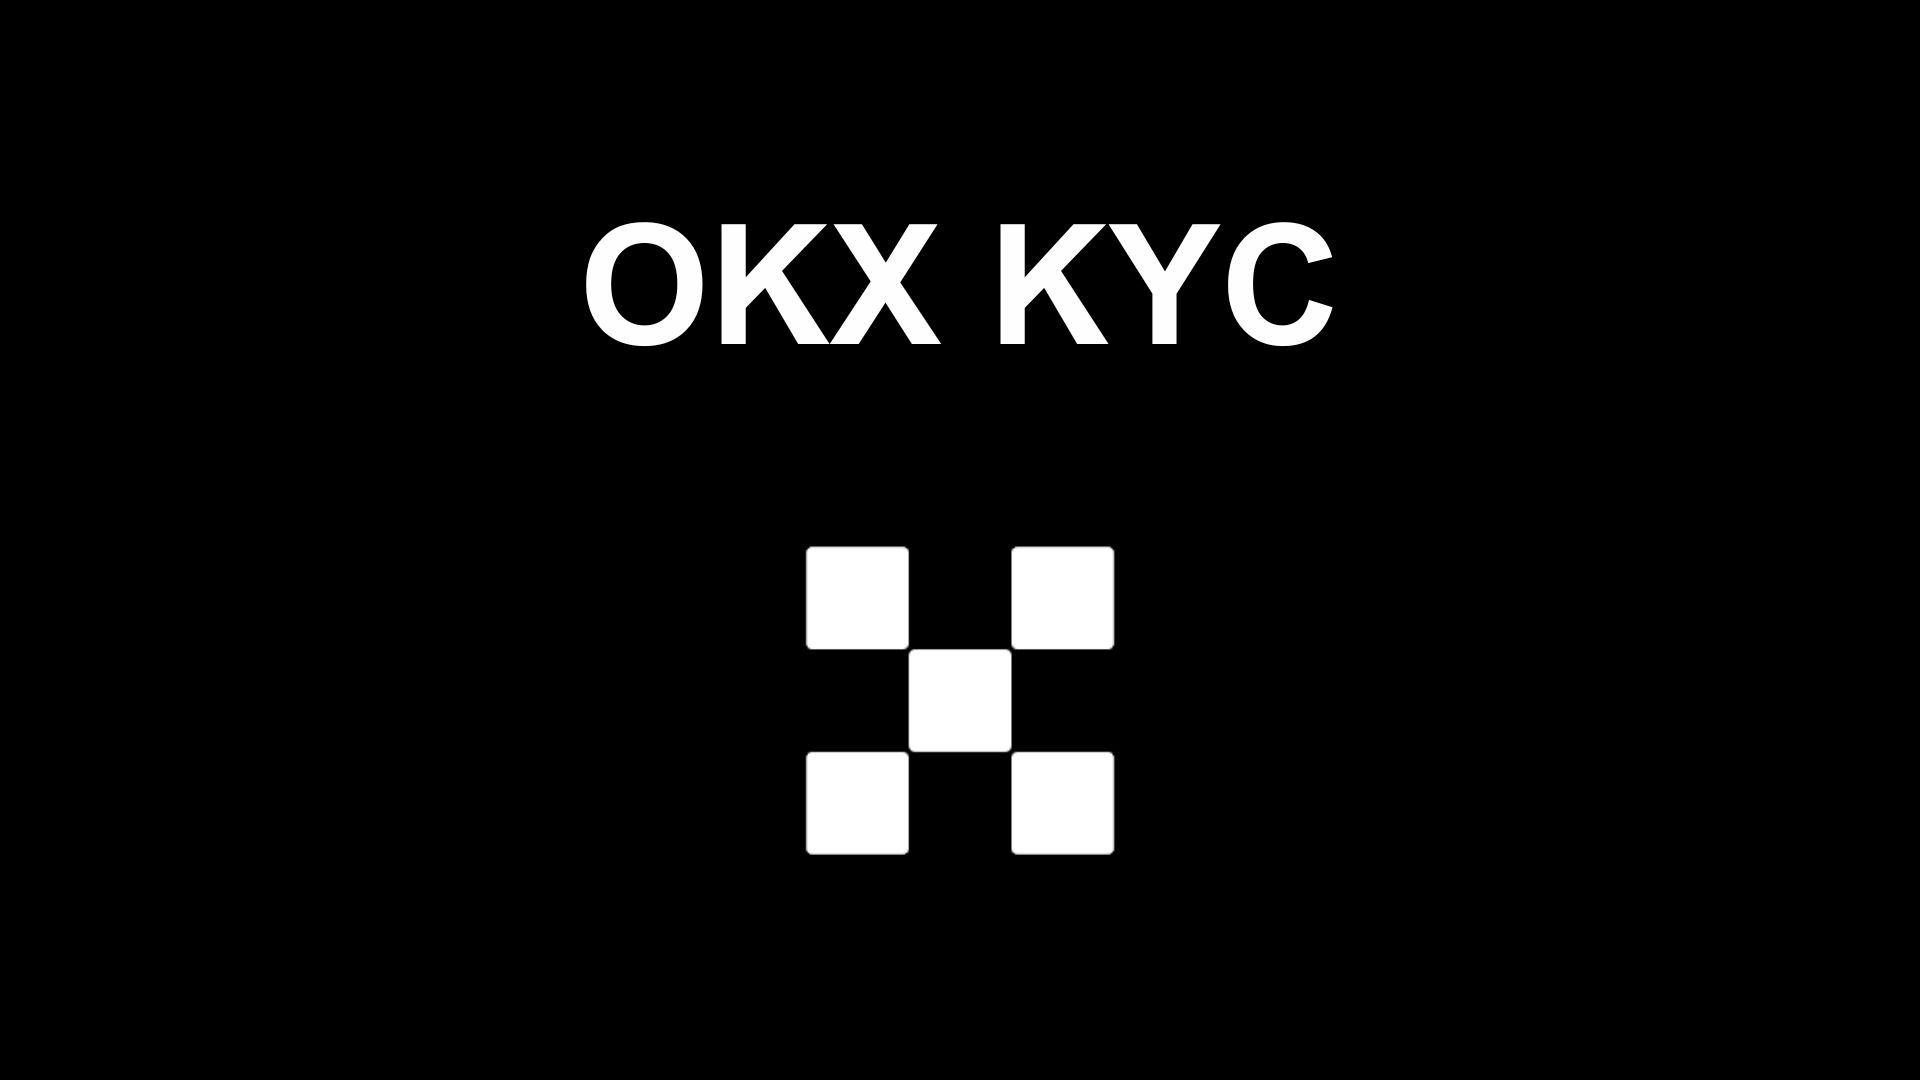 OKX KYC